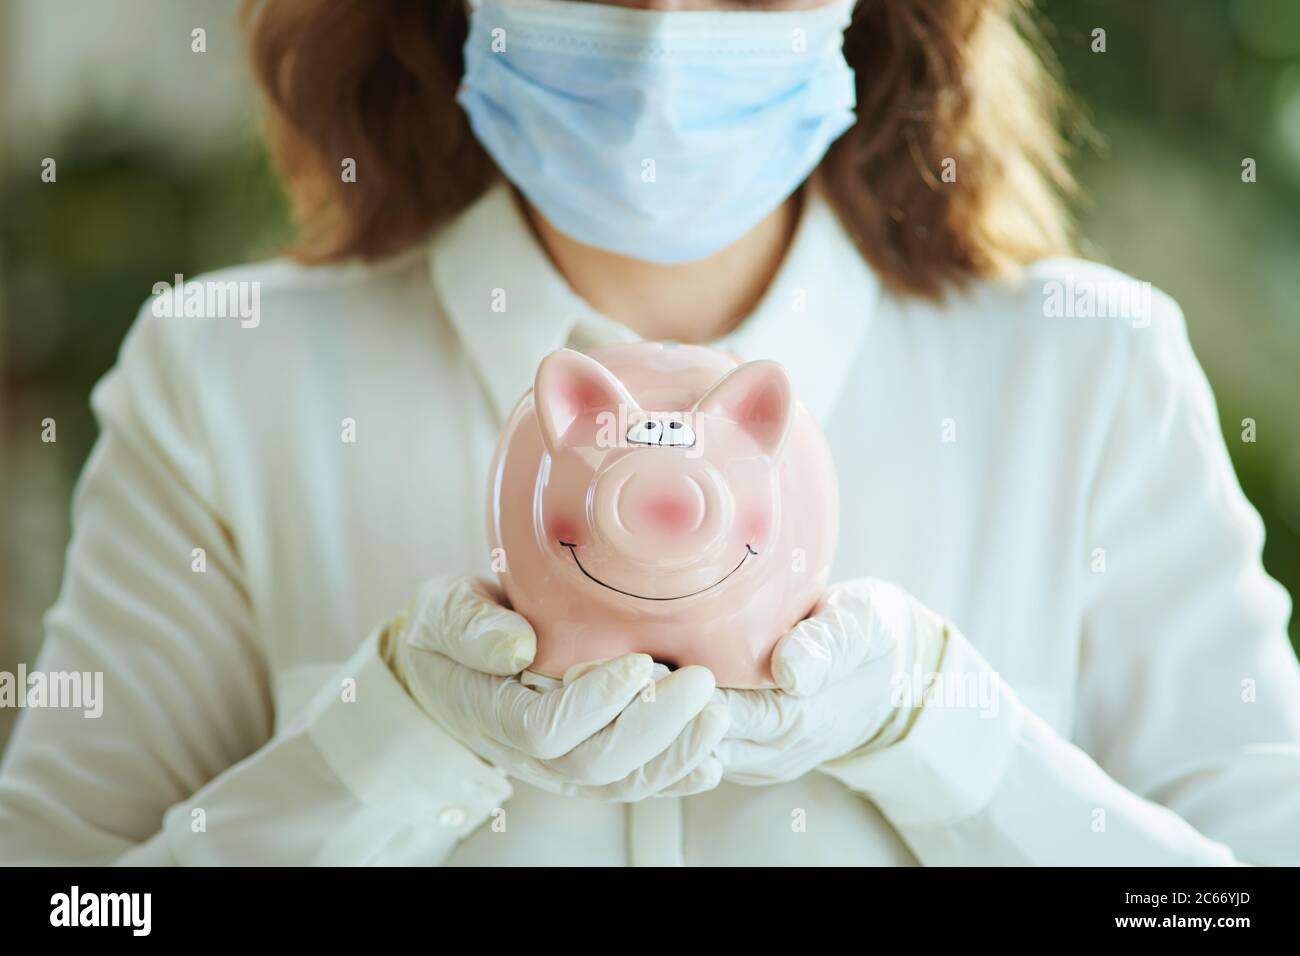 La vie durant la pandémie du coronavirus. Gros plan sur une femme en blouse blanche avec masque médical, banc de porc et gants. Banque D'Images